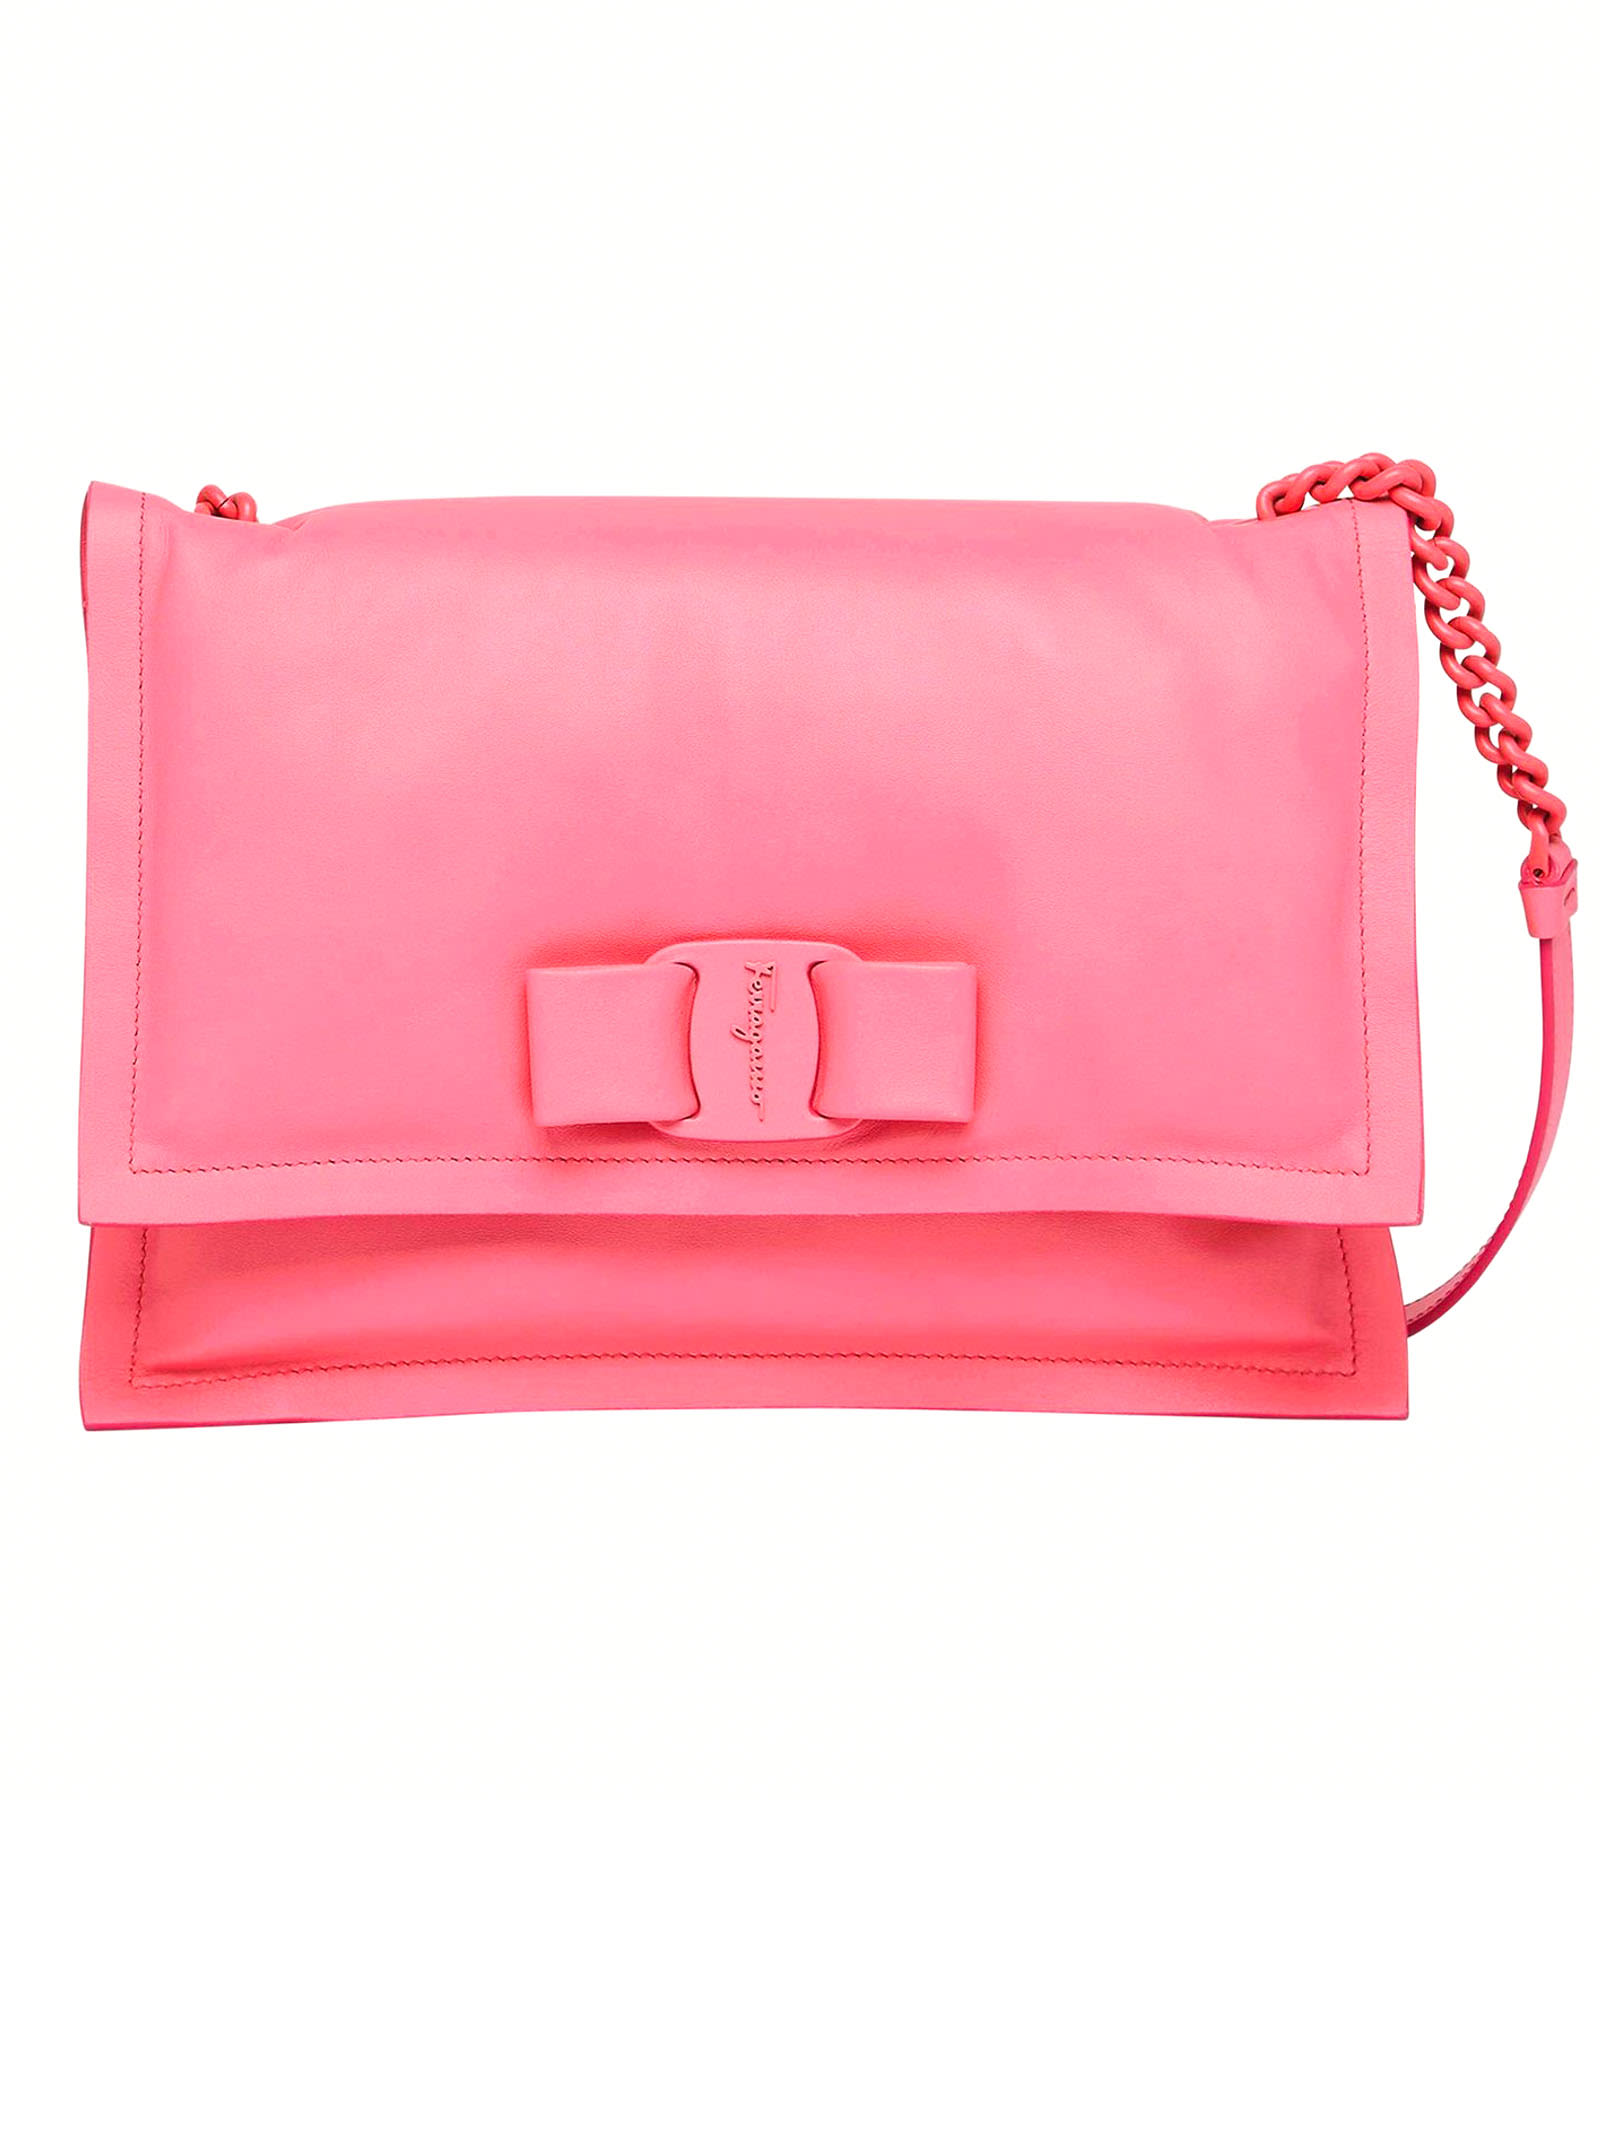 Salvatore Ferragamo Pink Leather Viva Bow Shoulder Bag